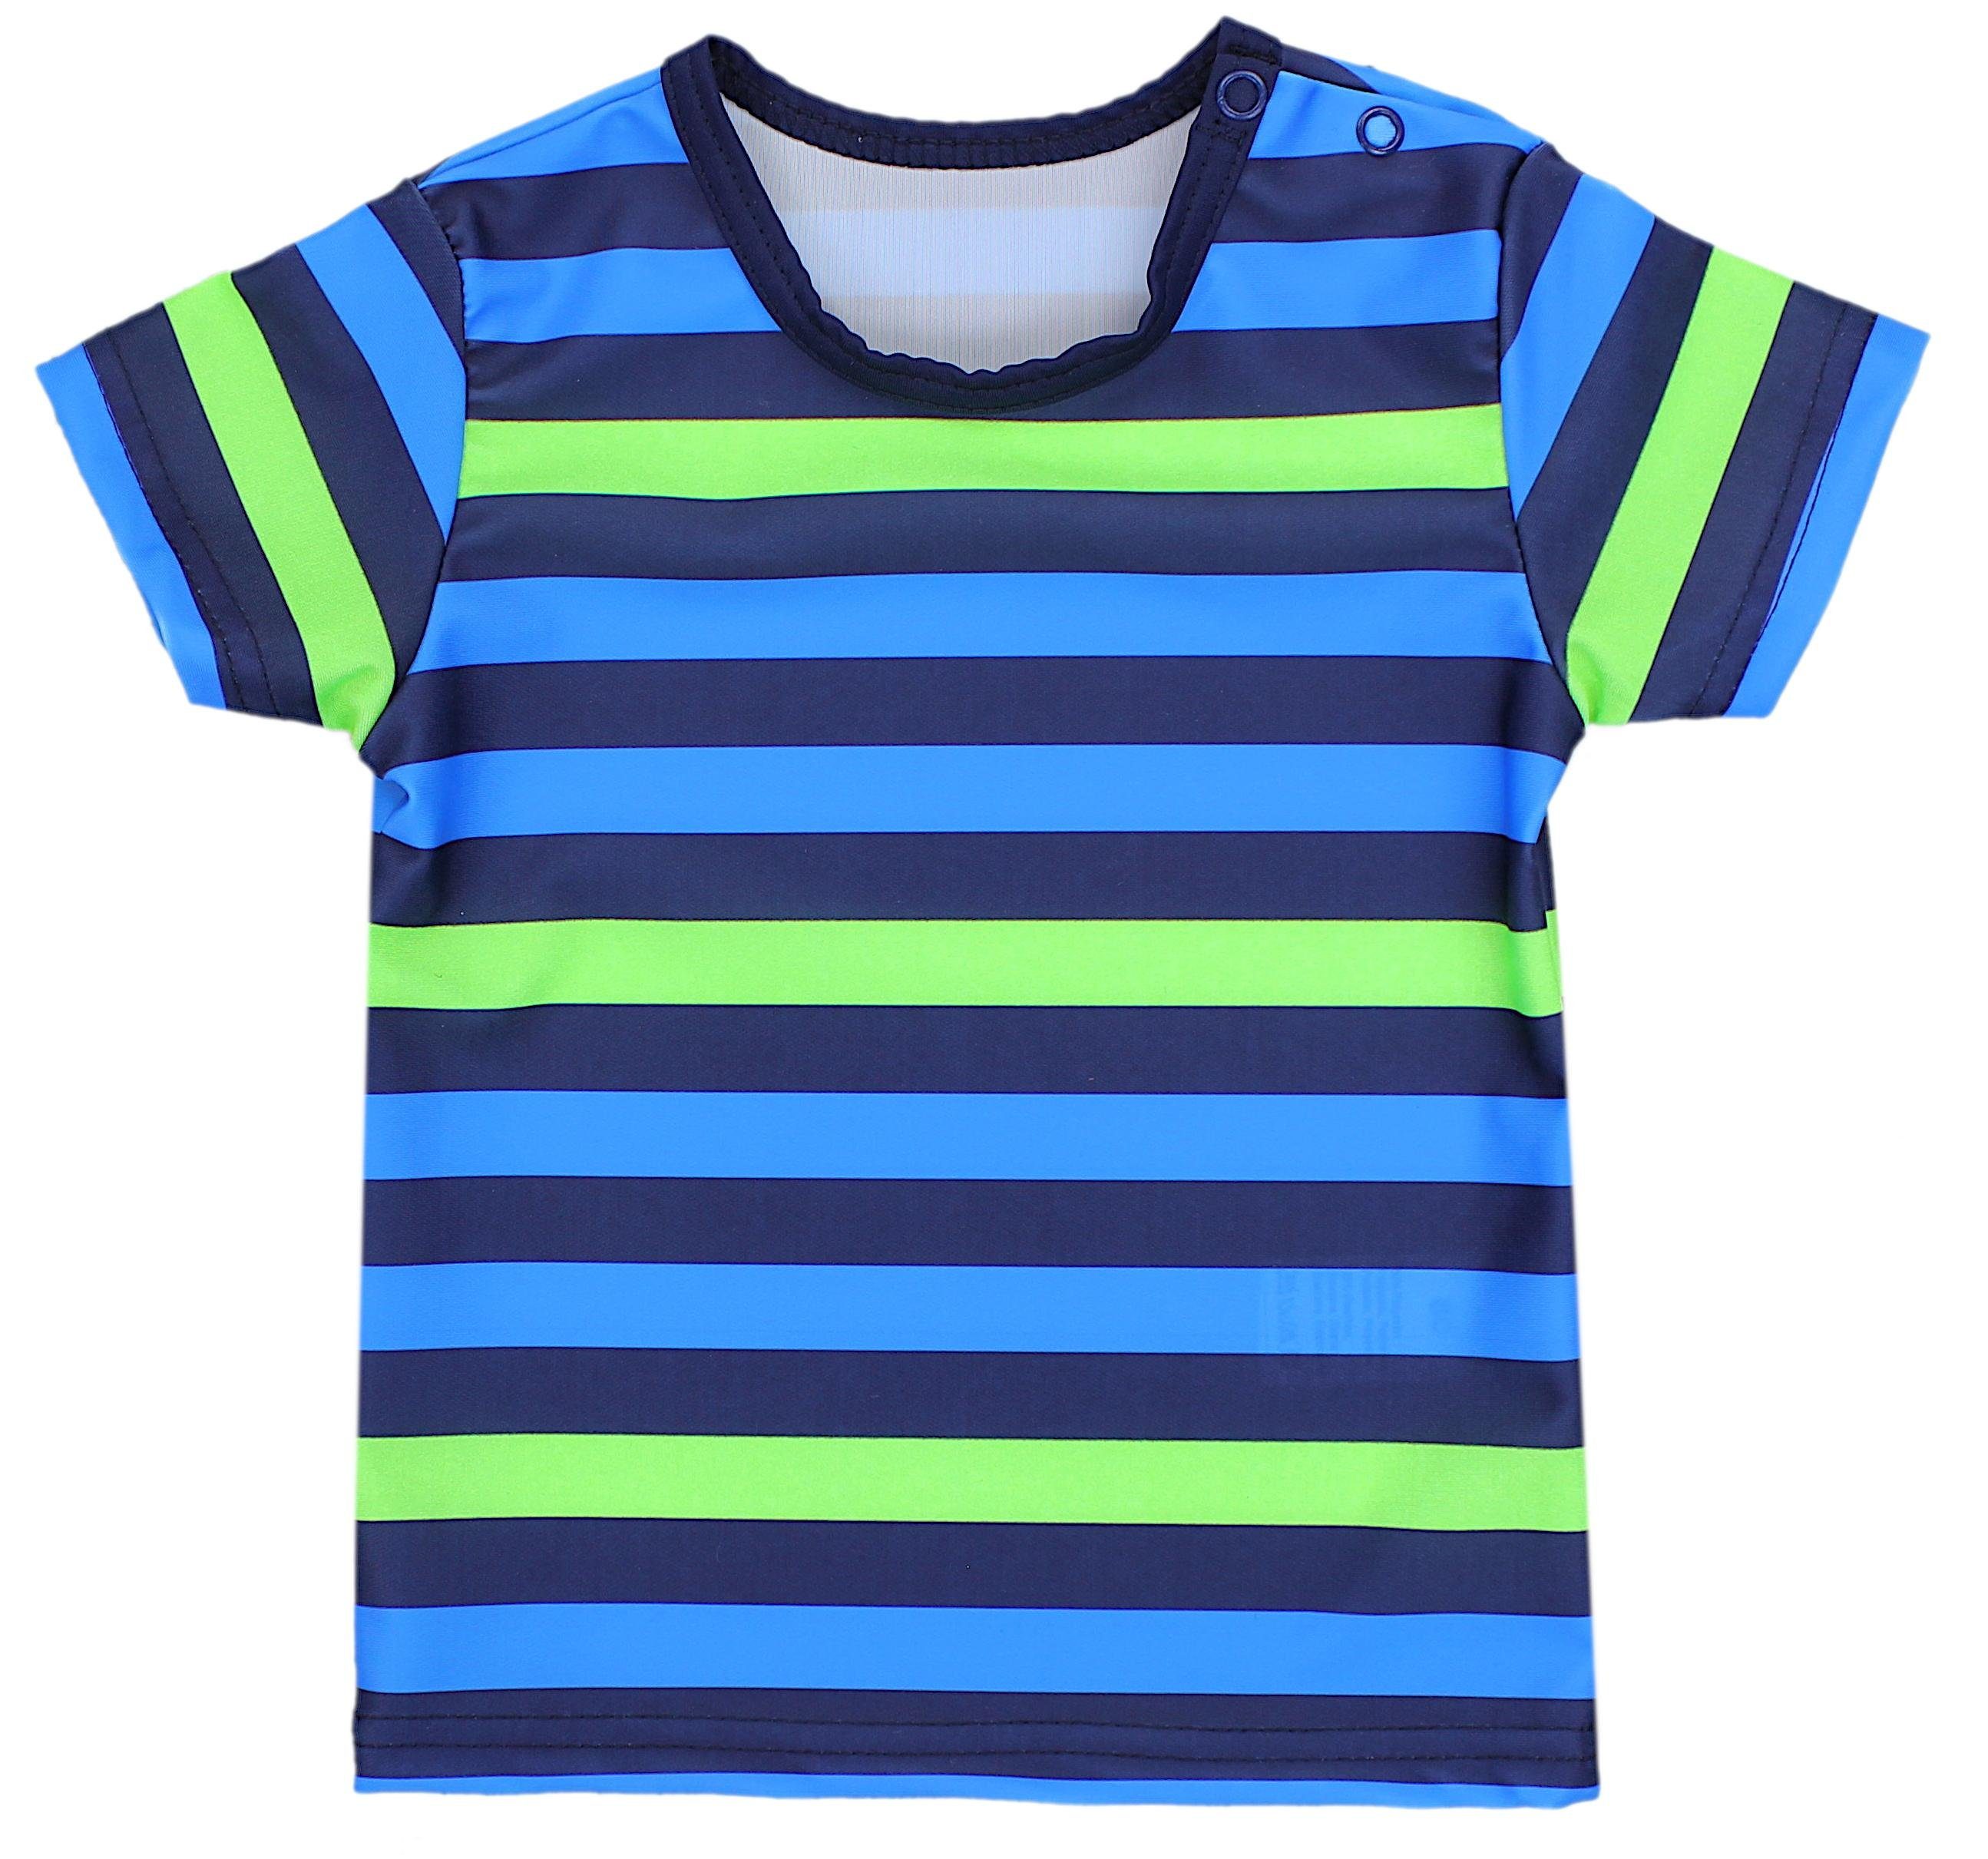 Jungen Aquarti Badeanzug / T-Shirt Baby Dunkelblau Kinder Zweiteiliger Grün Badeanzug Blau UV-Schutz / Badehose Streifen